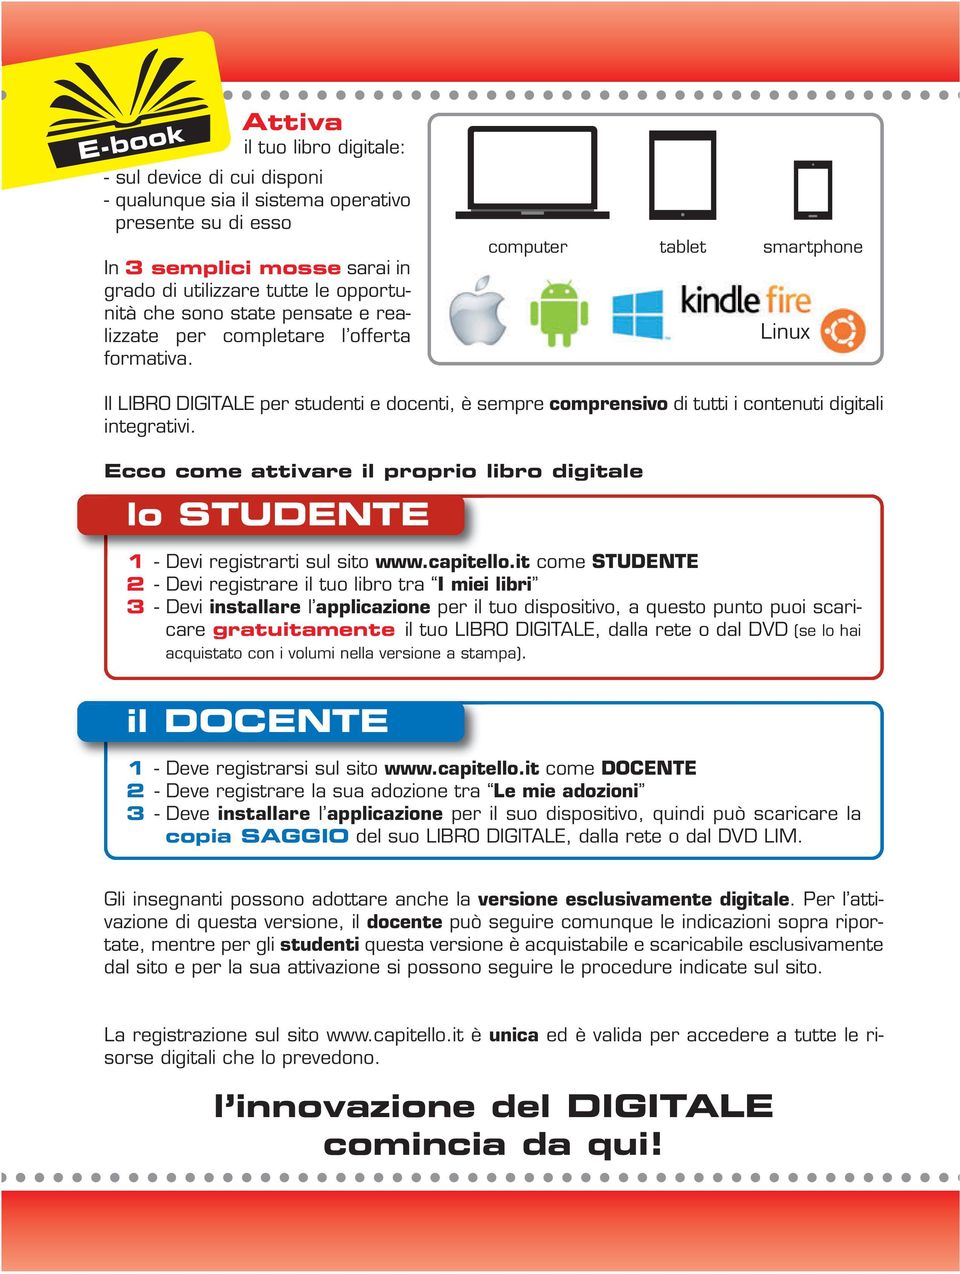 Ecco come attivare il proprio libro digitale lo STUDENTE 1 - Devi registrarti sul sito www.capitello.